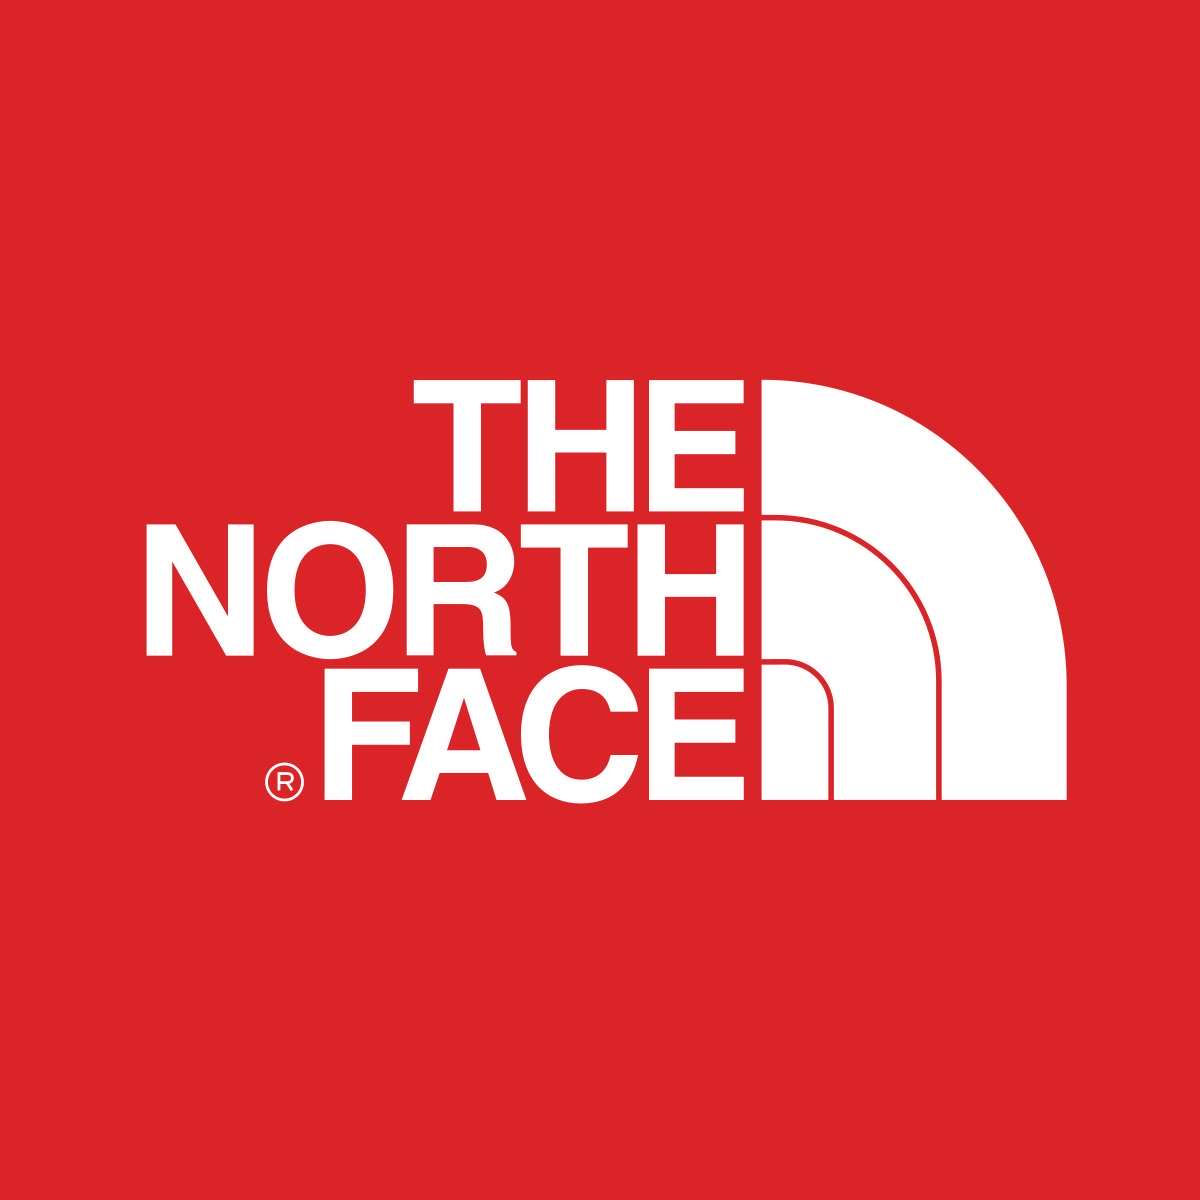  logo hương hiệu The North Face